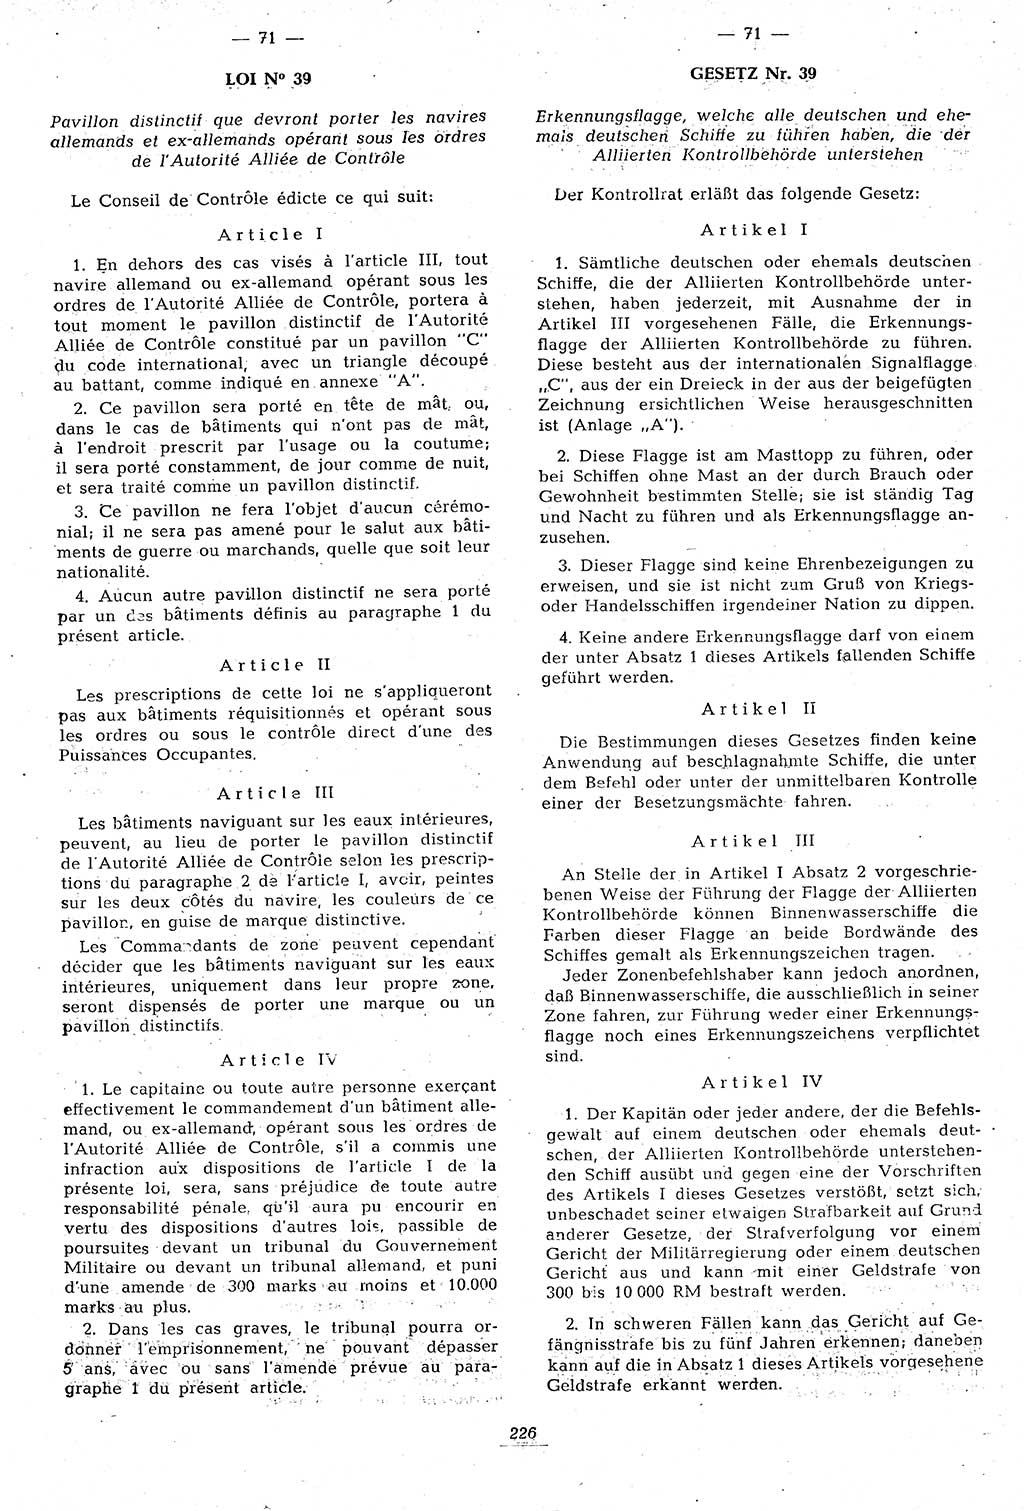 Amtsblatt des Kontrollrats (ABlKR) in Deutschland 1946, Seite 226/2 (ABlKR Dtl. 1946, S. 226/2)